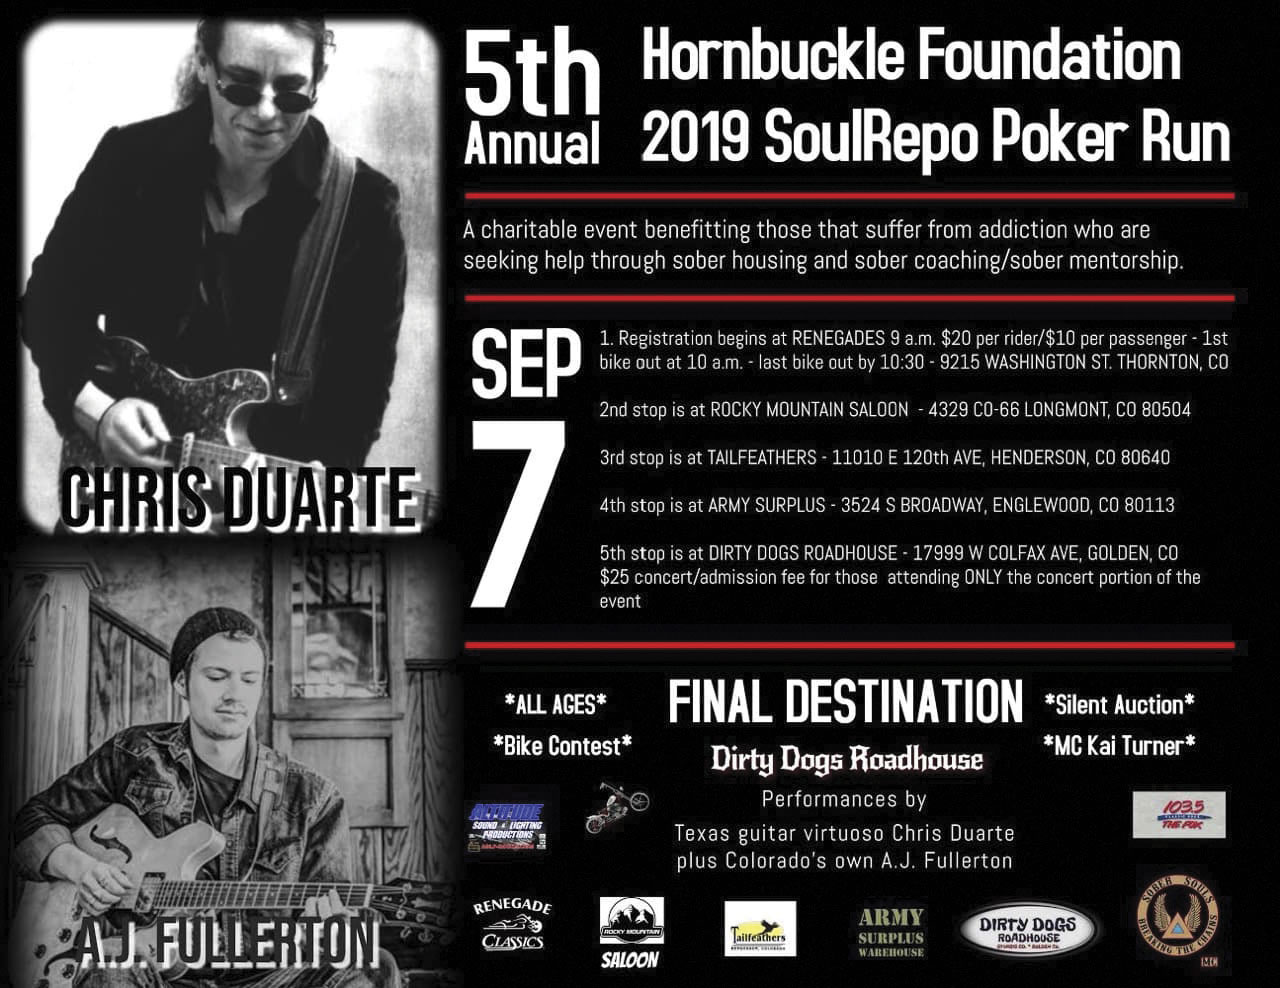 Hornbuckle Foundation 5th Annual Poker Run Set for September 7th